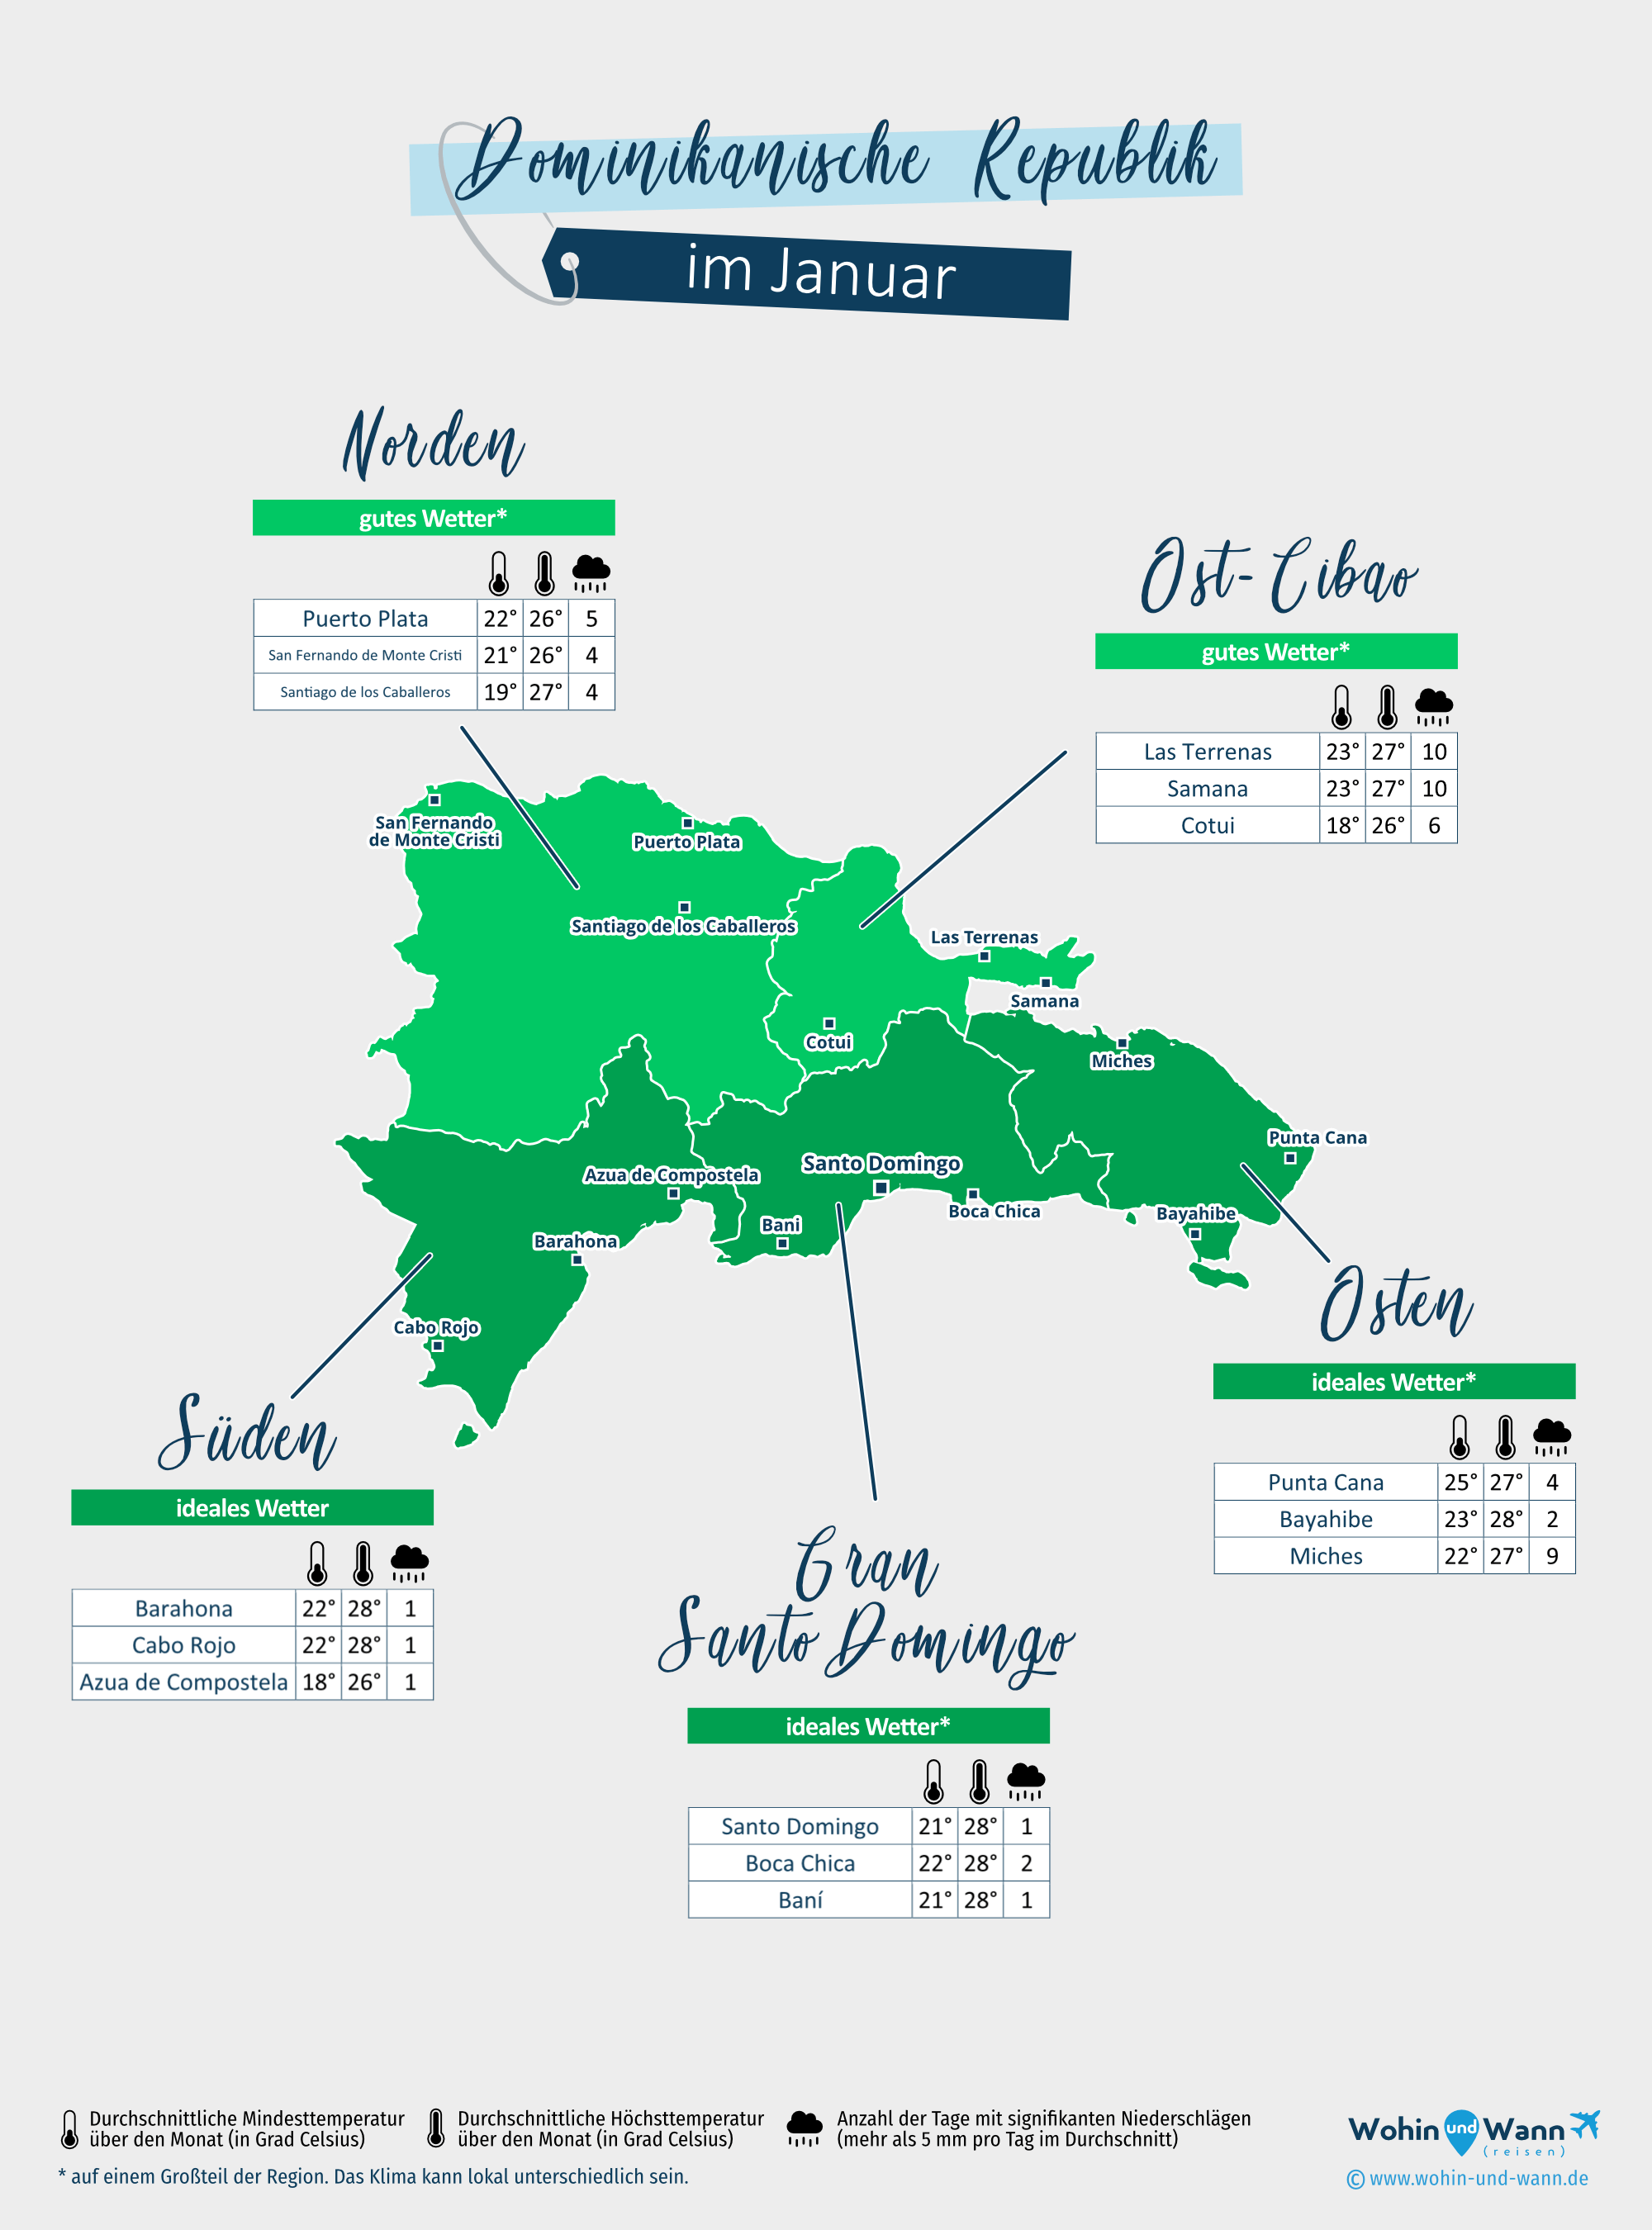 Dominikanische Republik: Wetterkarte im Januar in verschiedenen Regionen